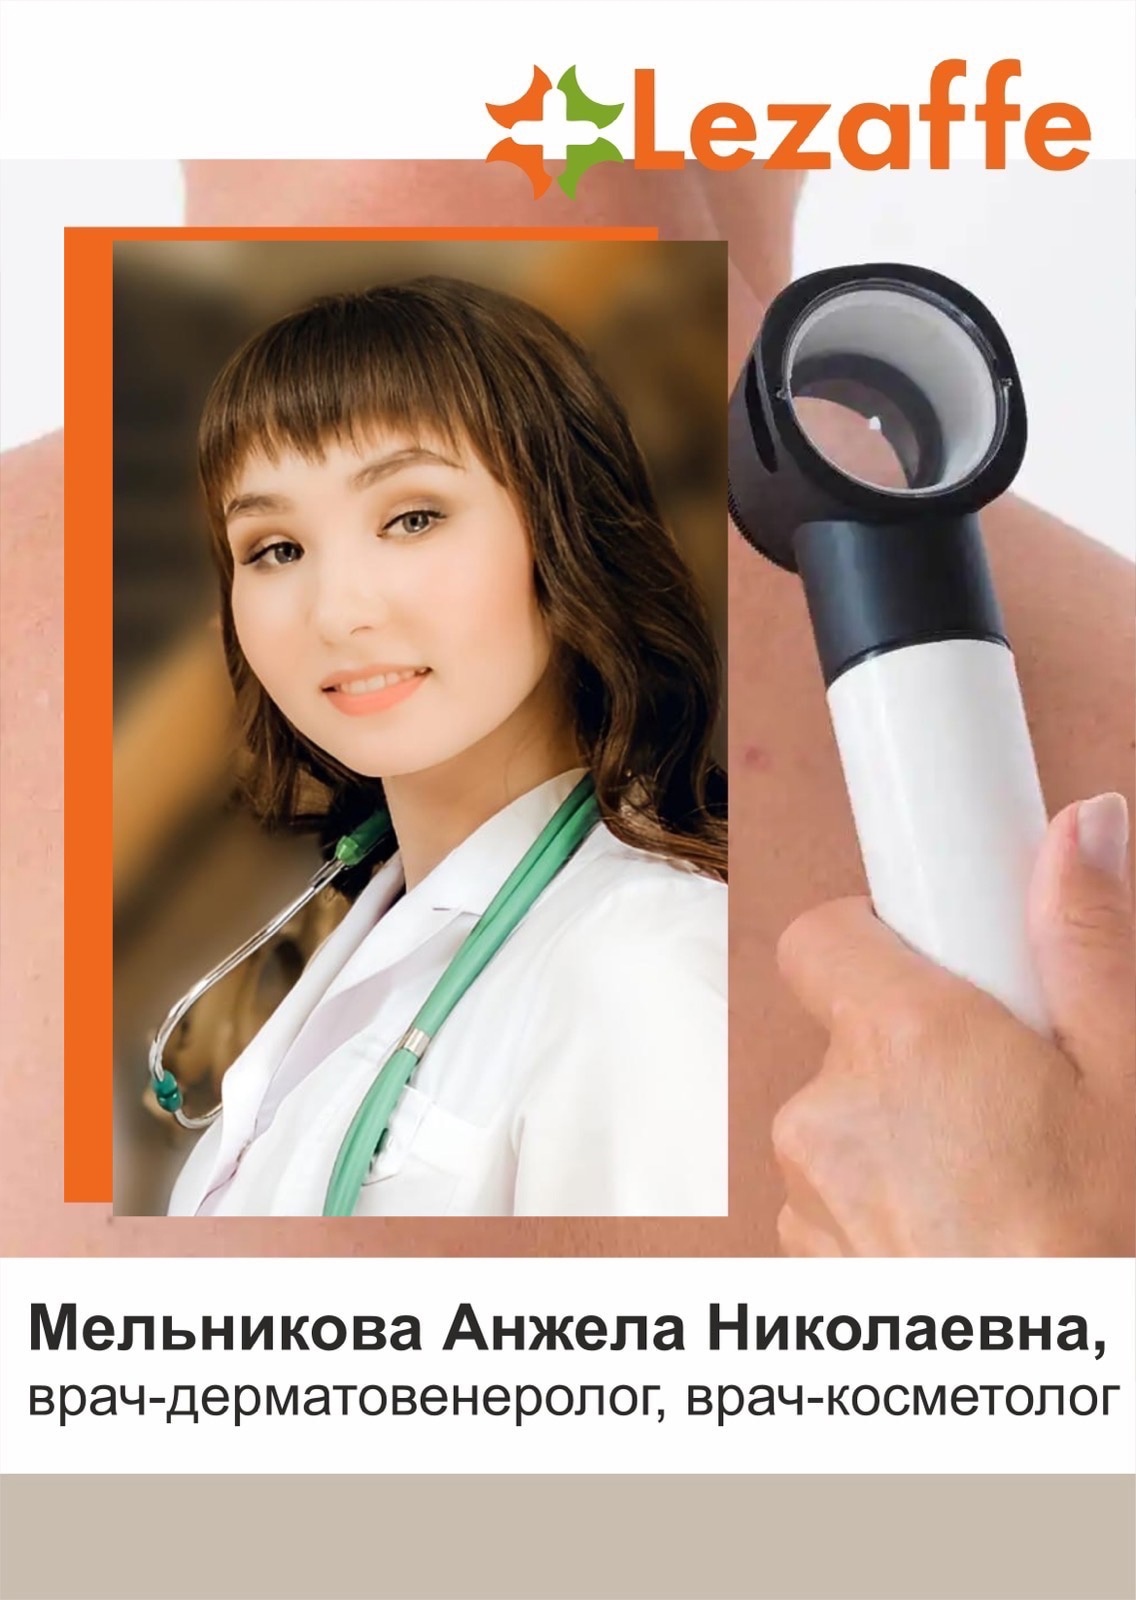 Мельникова Анжела Николаевна - врач-дерматовенеролог, врач-косметолог в клинике Lezaffe г. Нягань